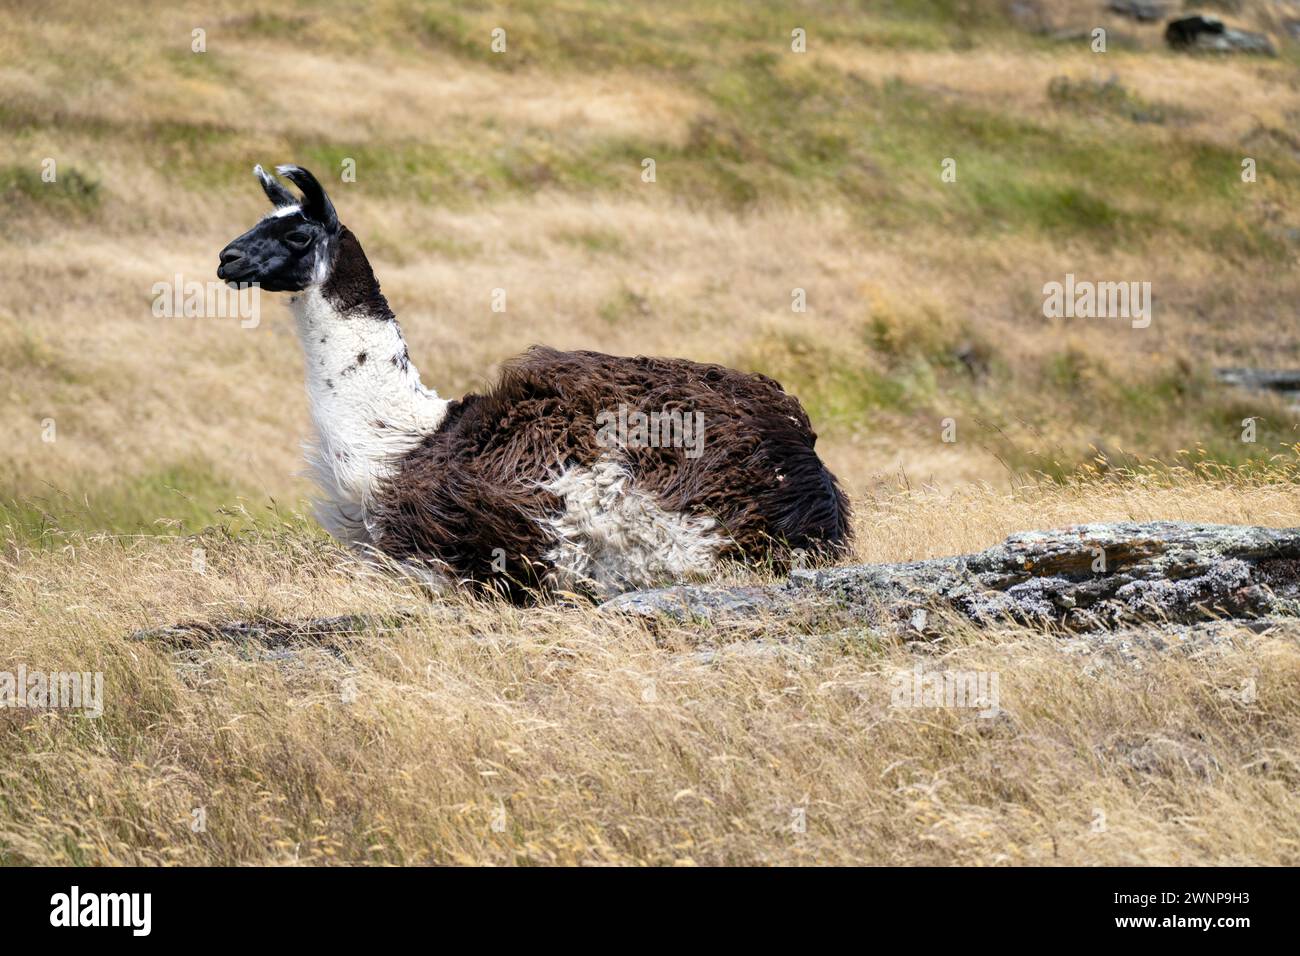 Schwarz-weiß-Lama liegt auf einem grasbewachsenen Feld, sein dickes Fell und sein wacher Ausdruck zeigen, dass er sich an das natürliche Gelände anpassen kann Stockfoto